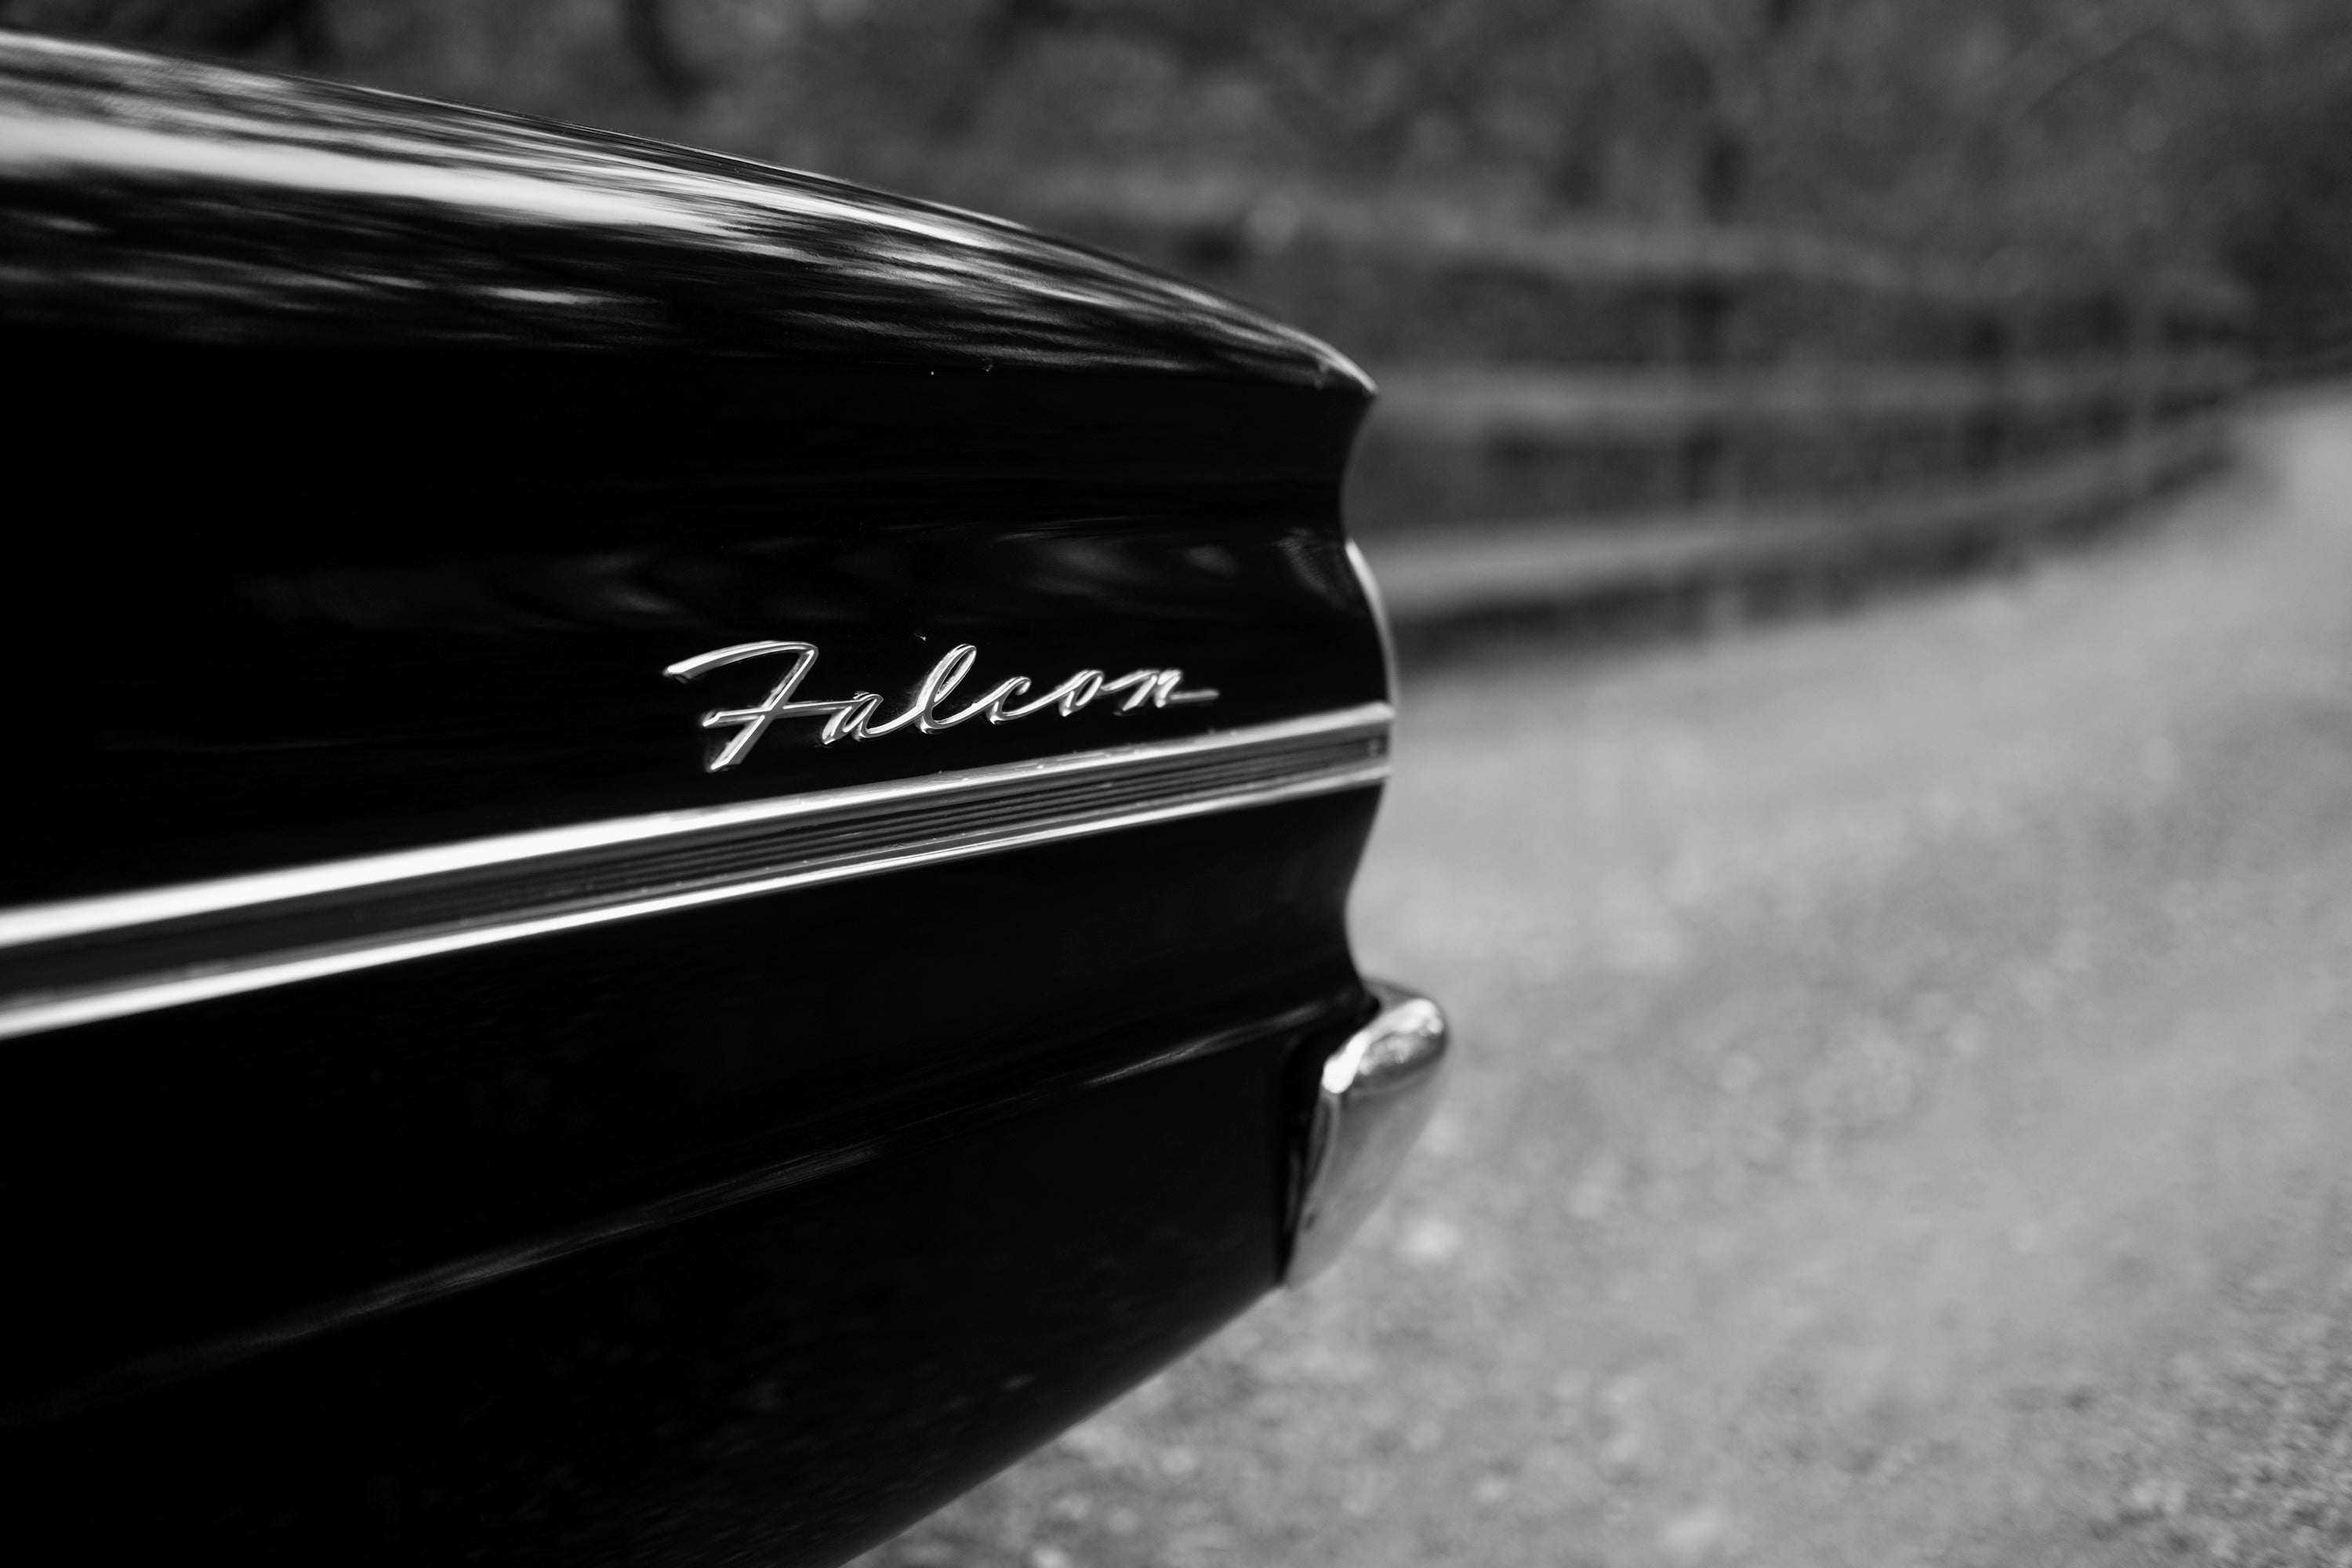 1963 Ford Falcon Convertible FINE ART PRINT